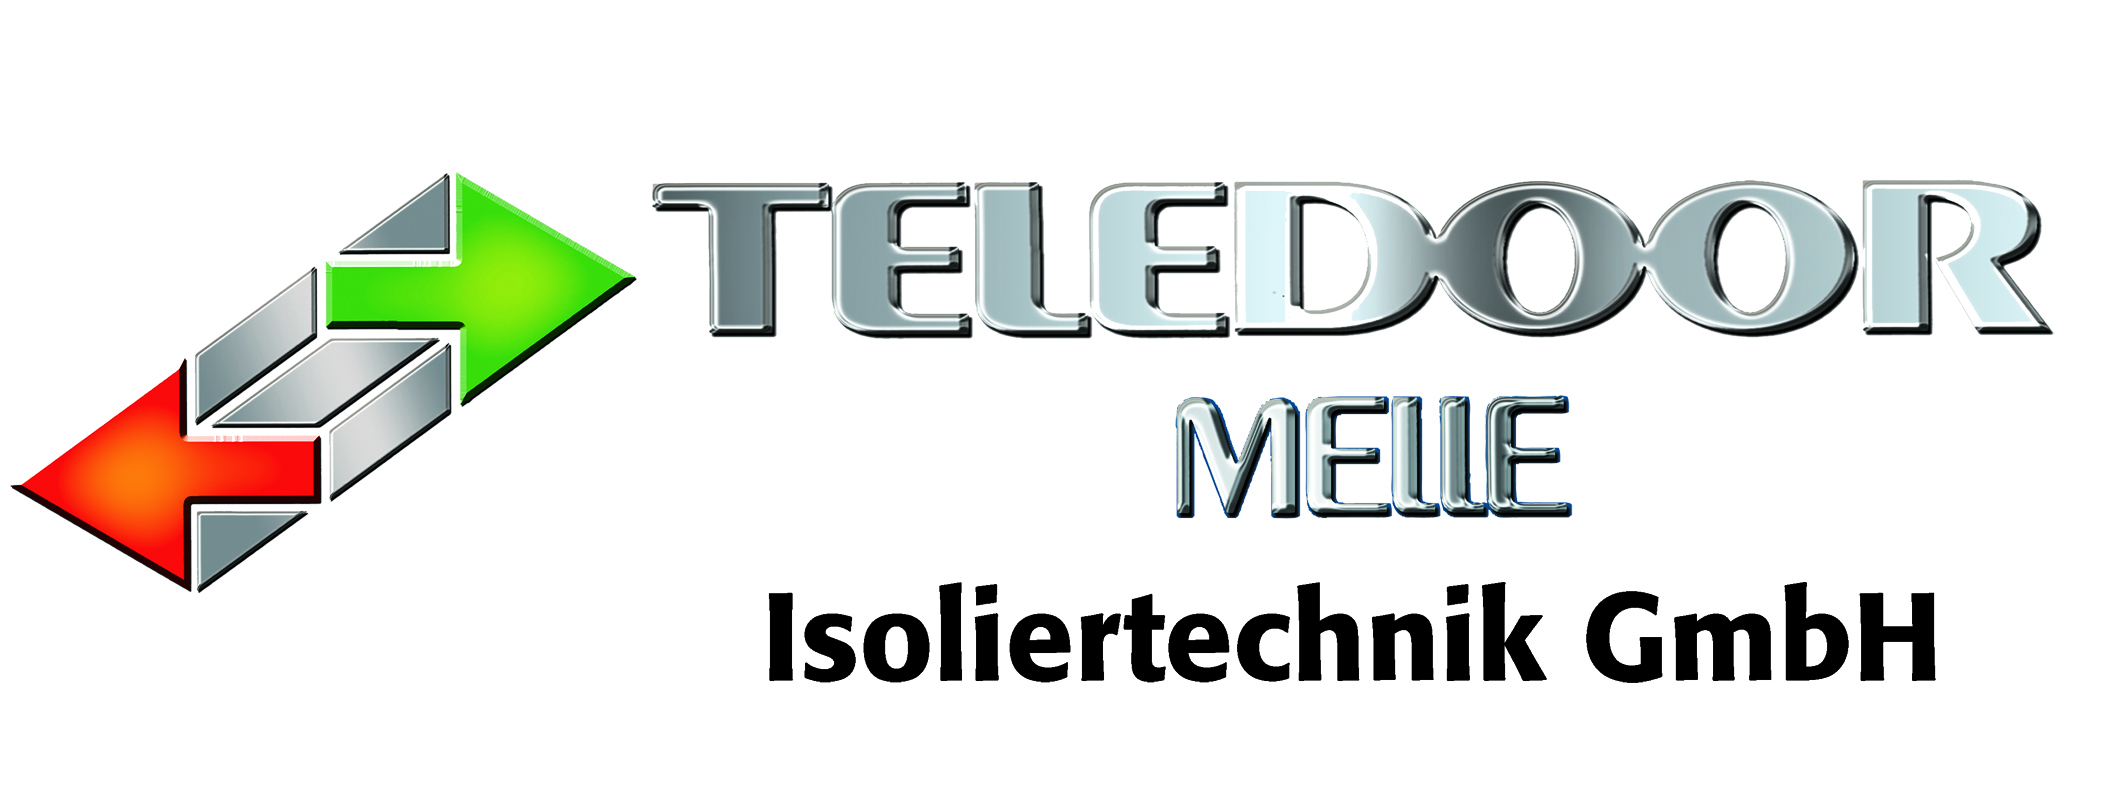 Logo der Firma Teledoor